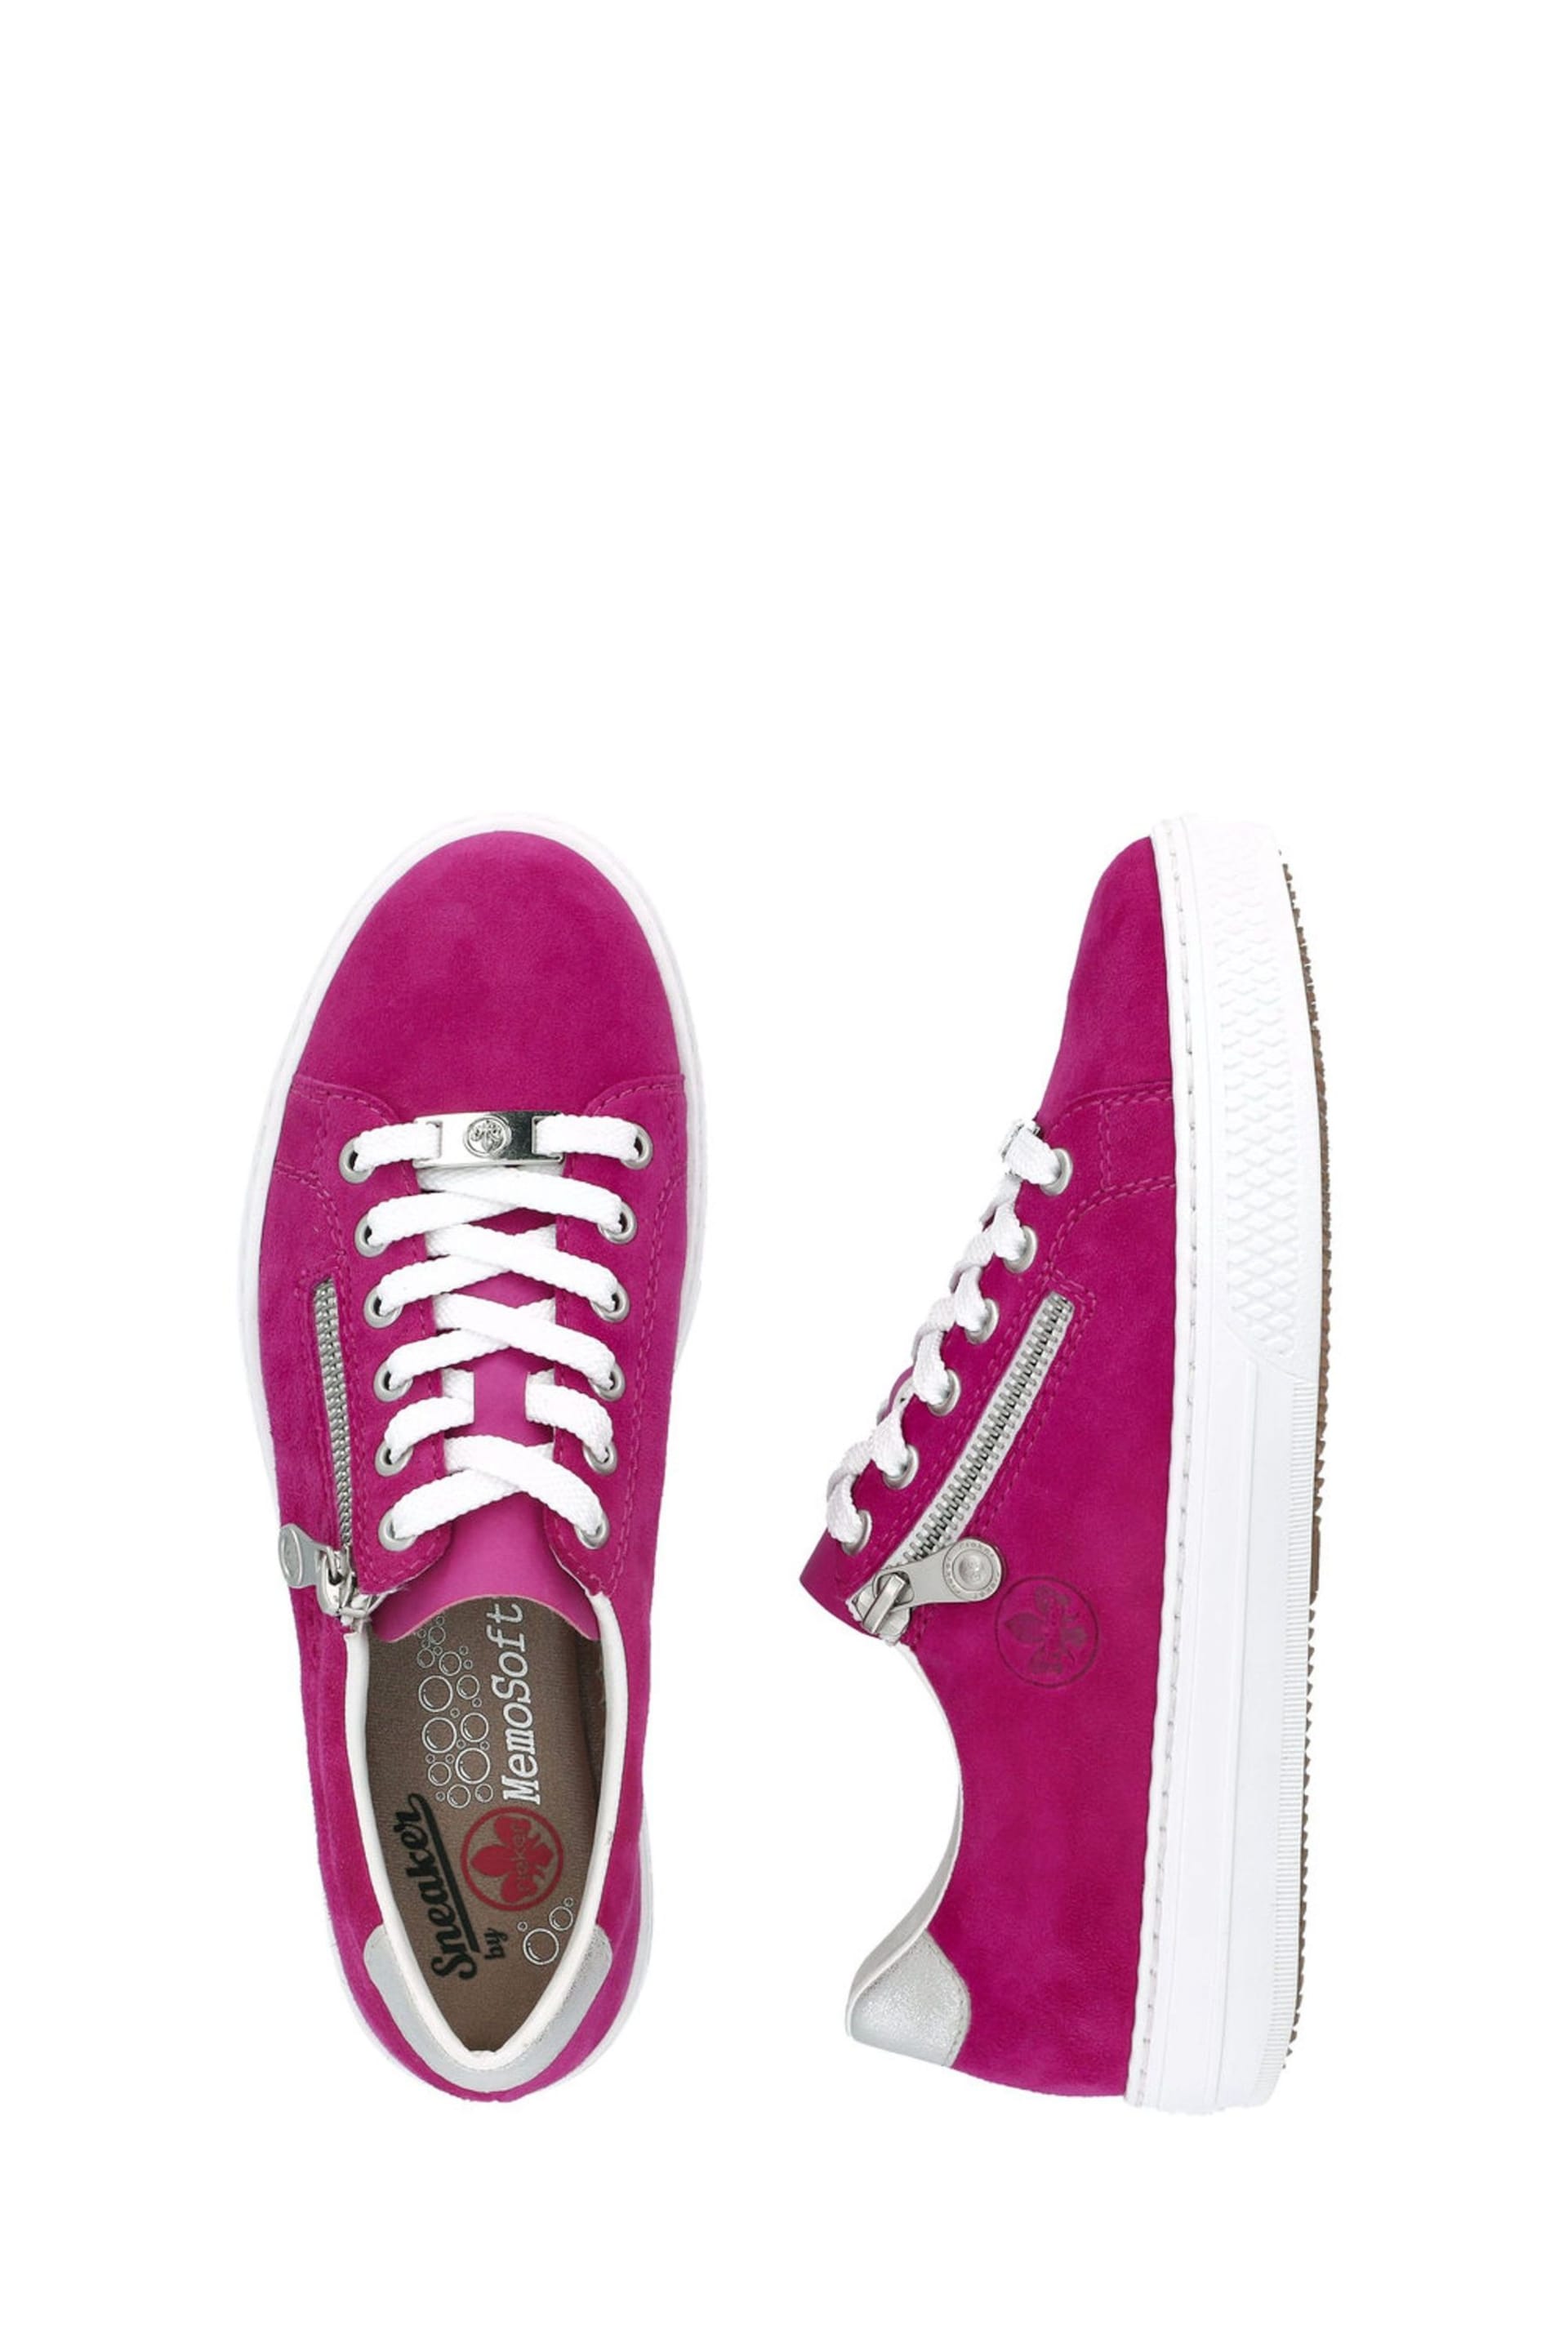 Rieker Womens Pink Zipper Shoes - Image 8 of 10